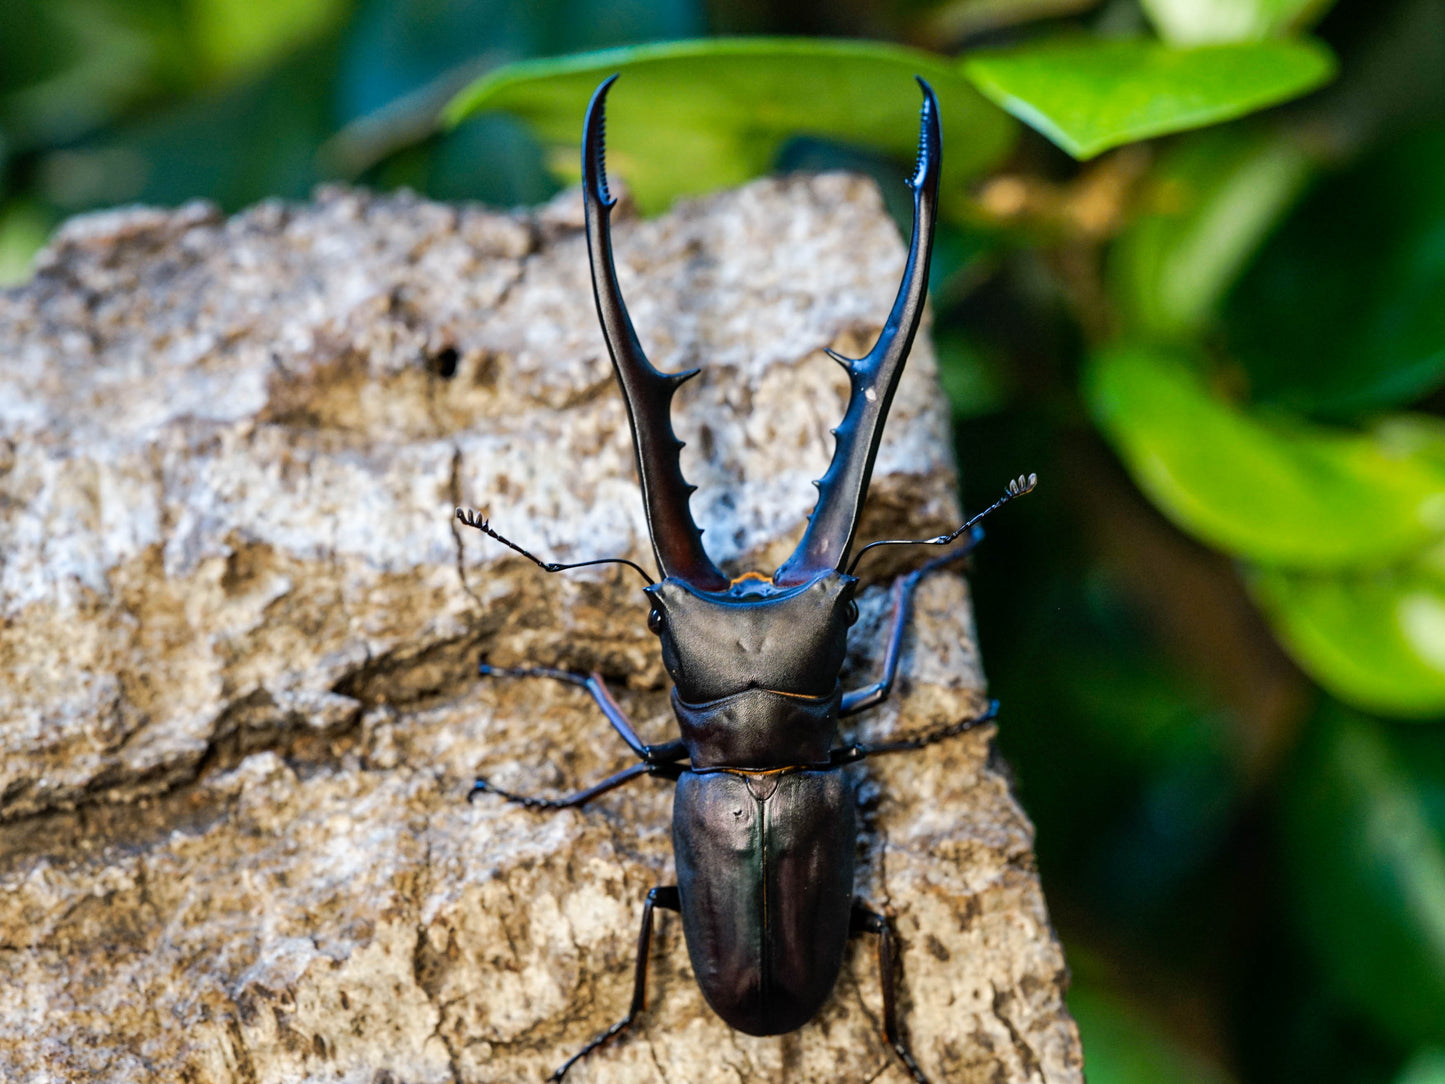 LARVAE: Purple Metallic stag beetle (Cyclommatus metallifer)